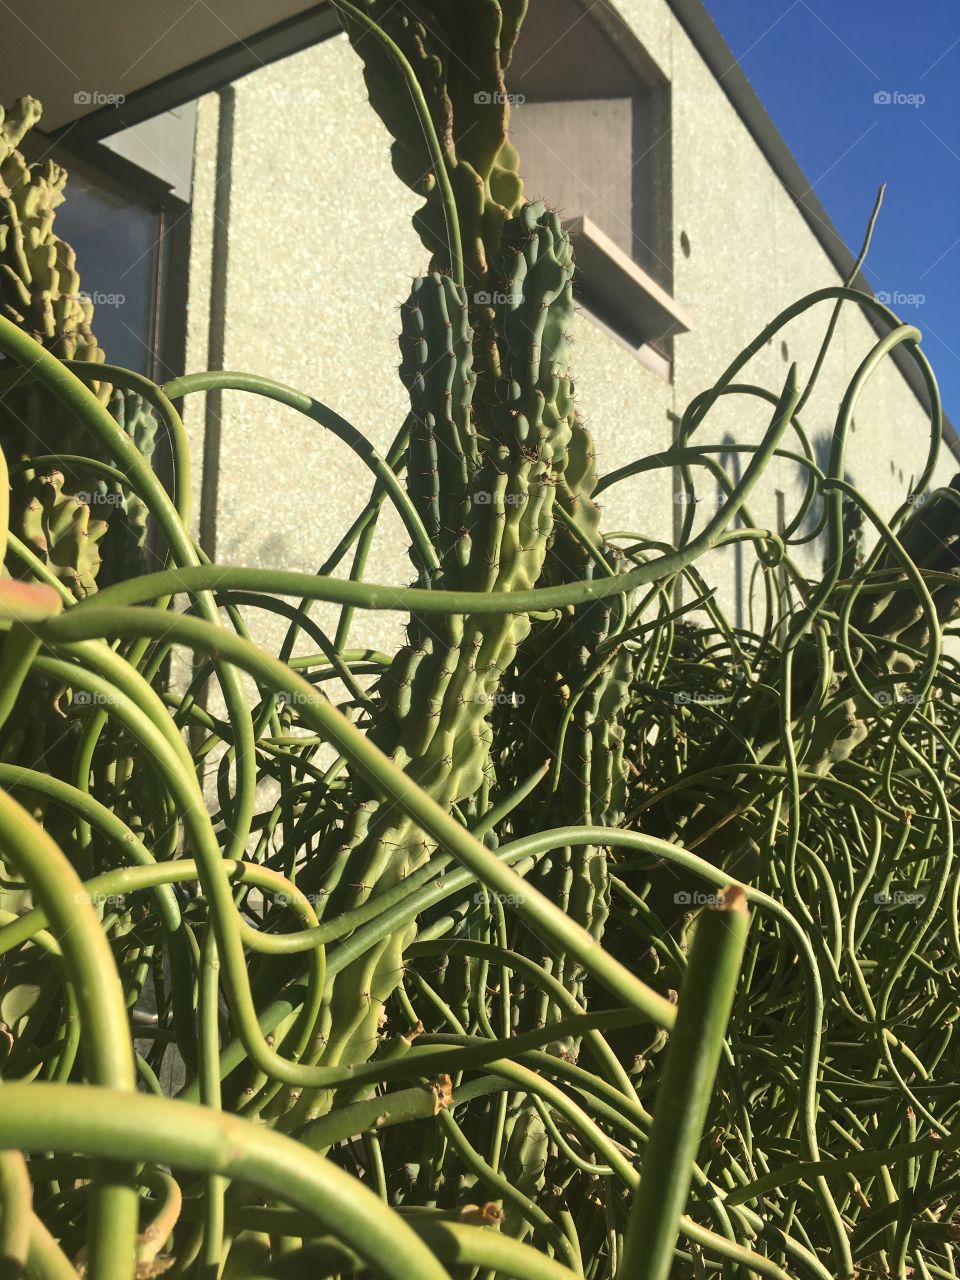 Phoenix art museum cacti 